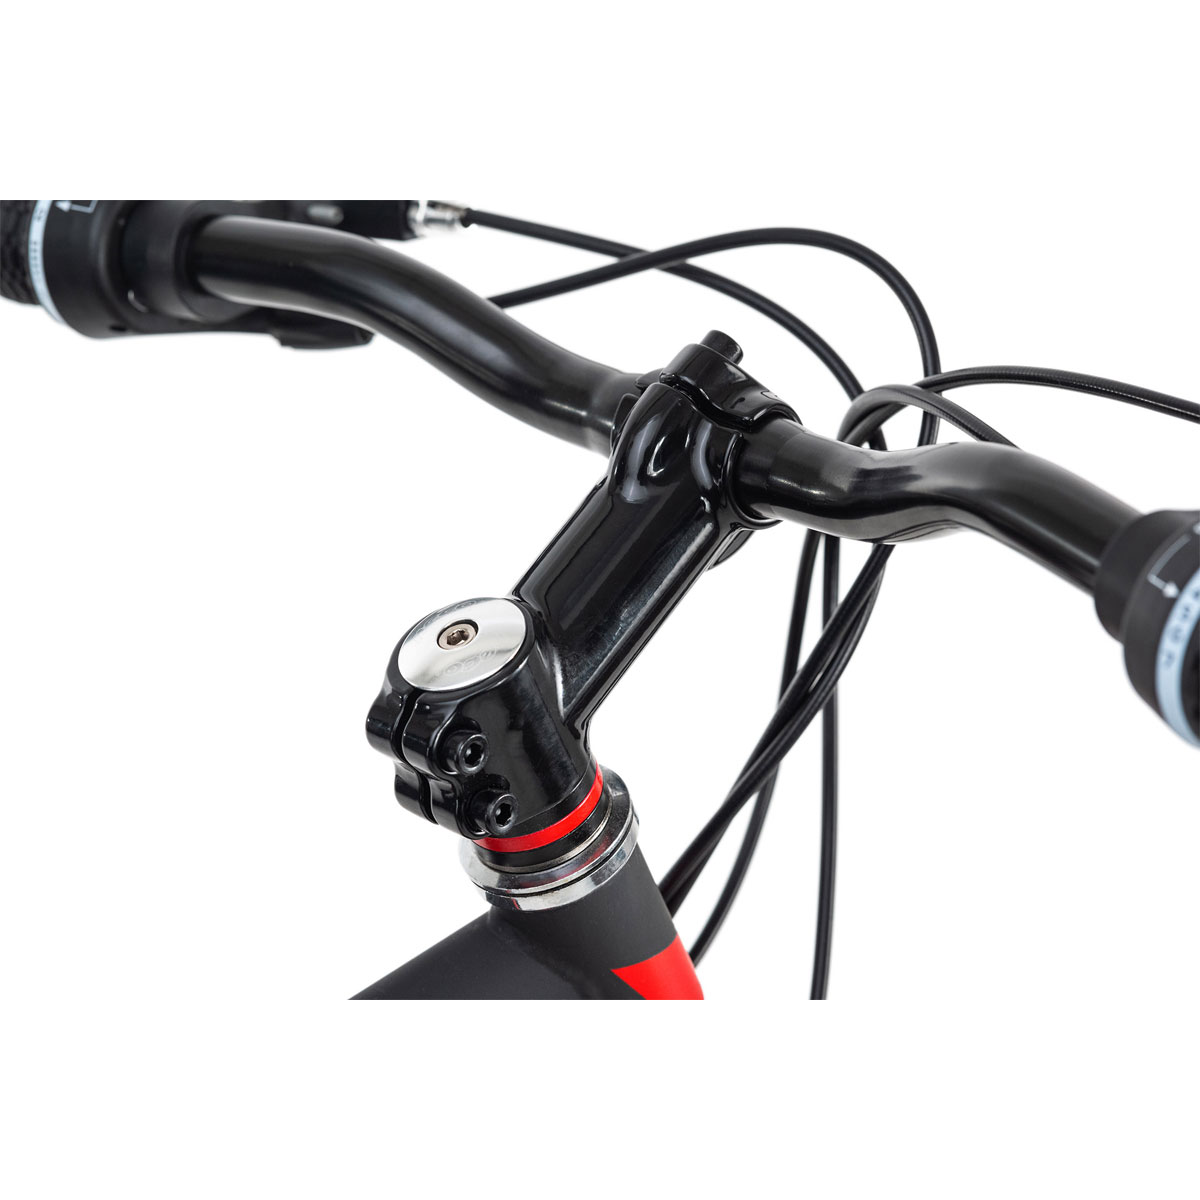 Mountainbike „Xtinct“, Hardtail, 29 Zoll, 50 cm, schwarz-rot